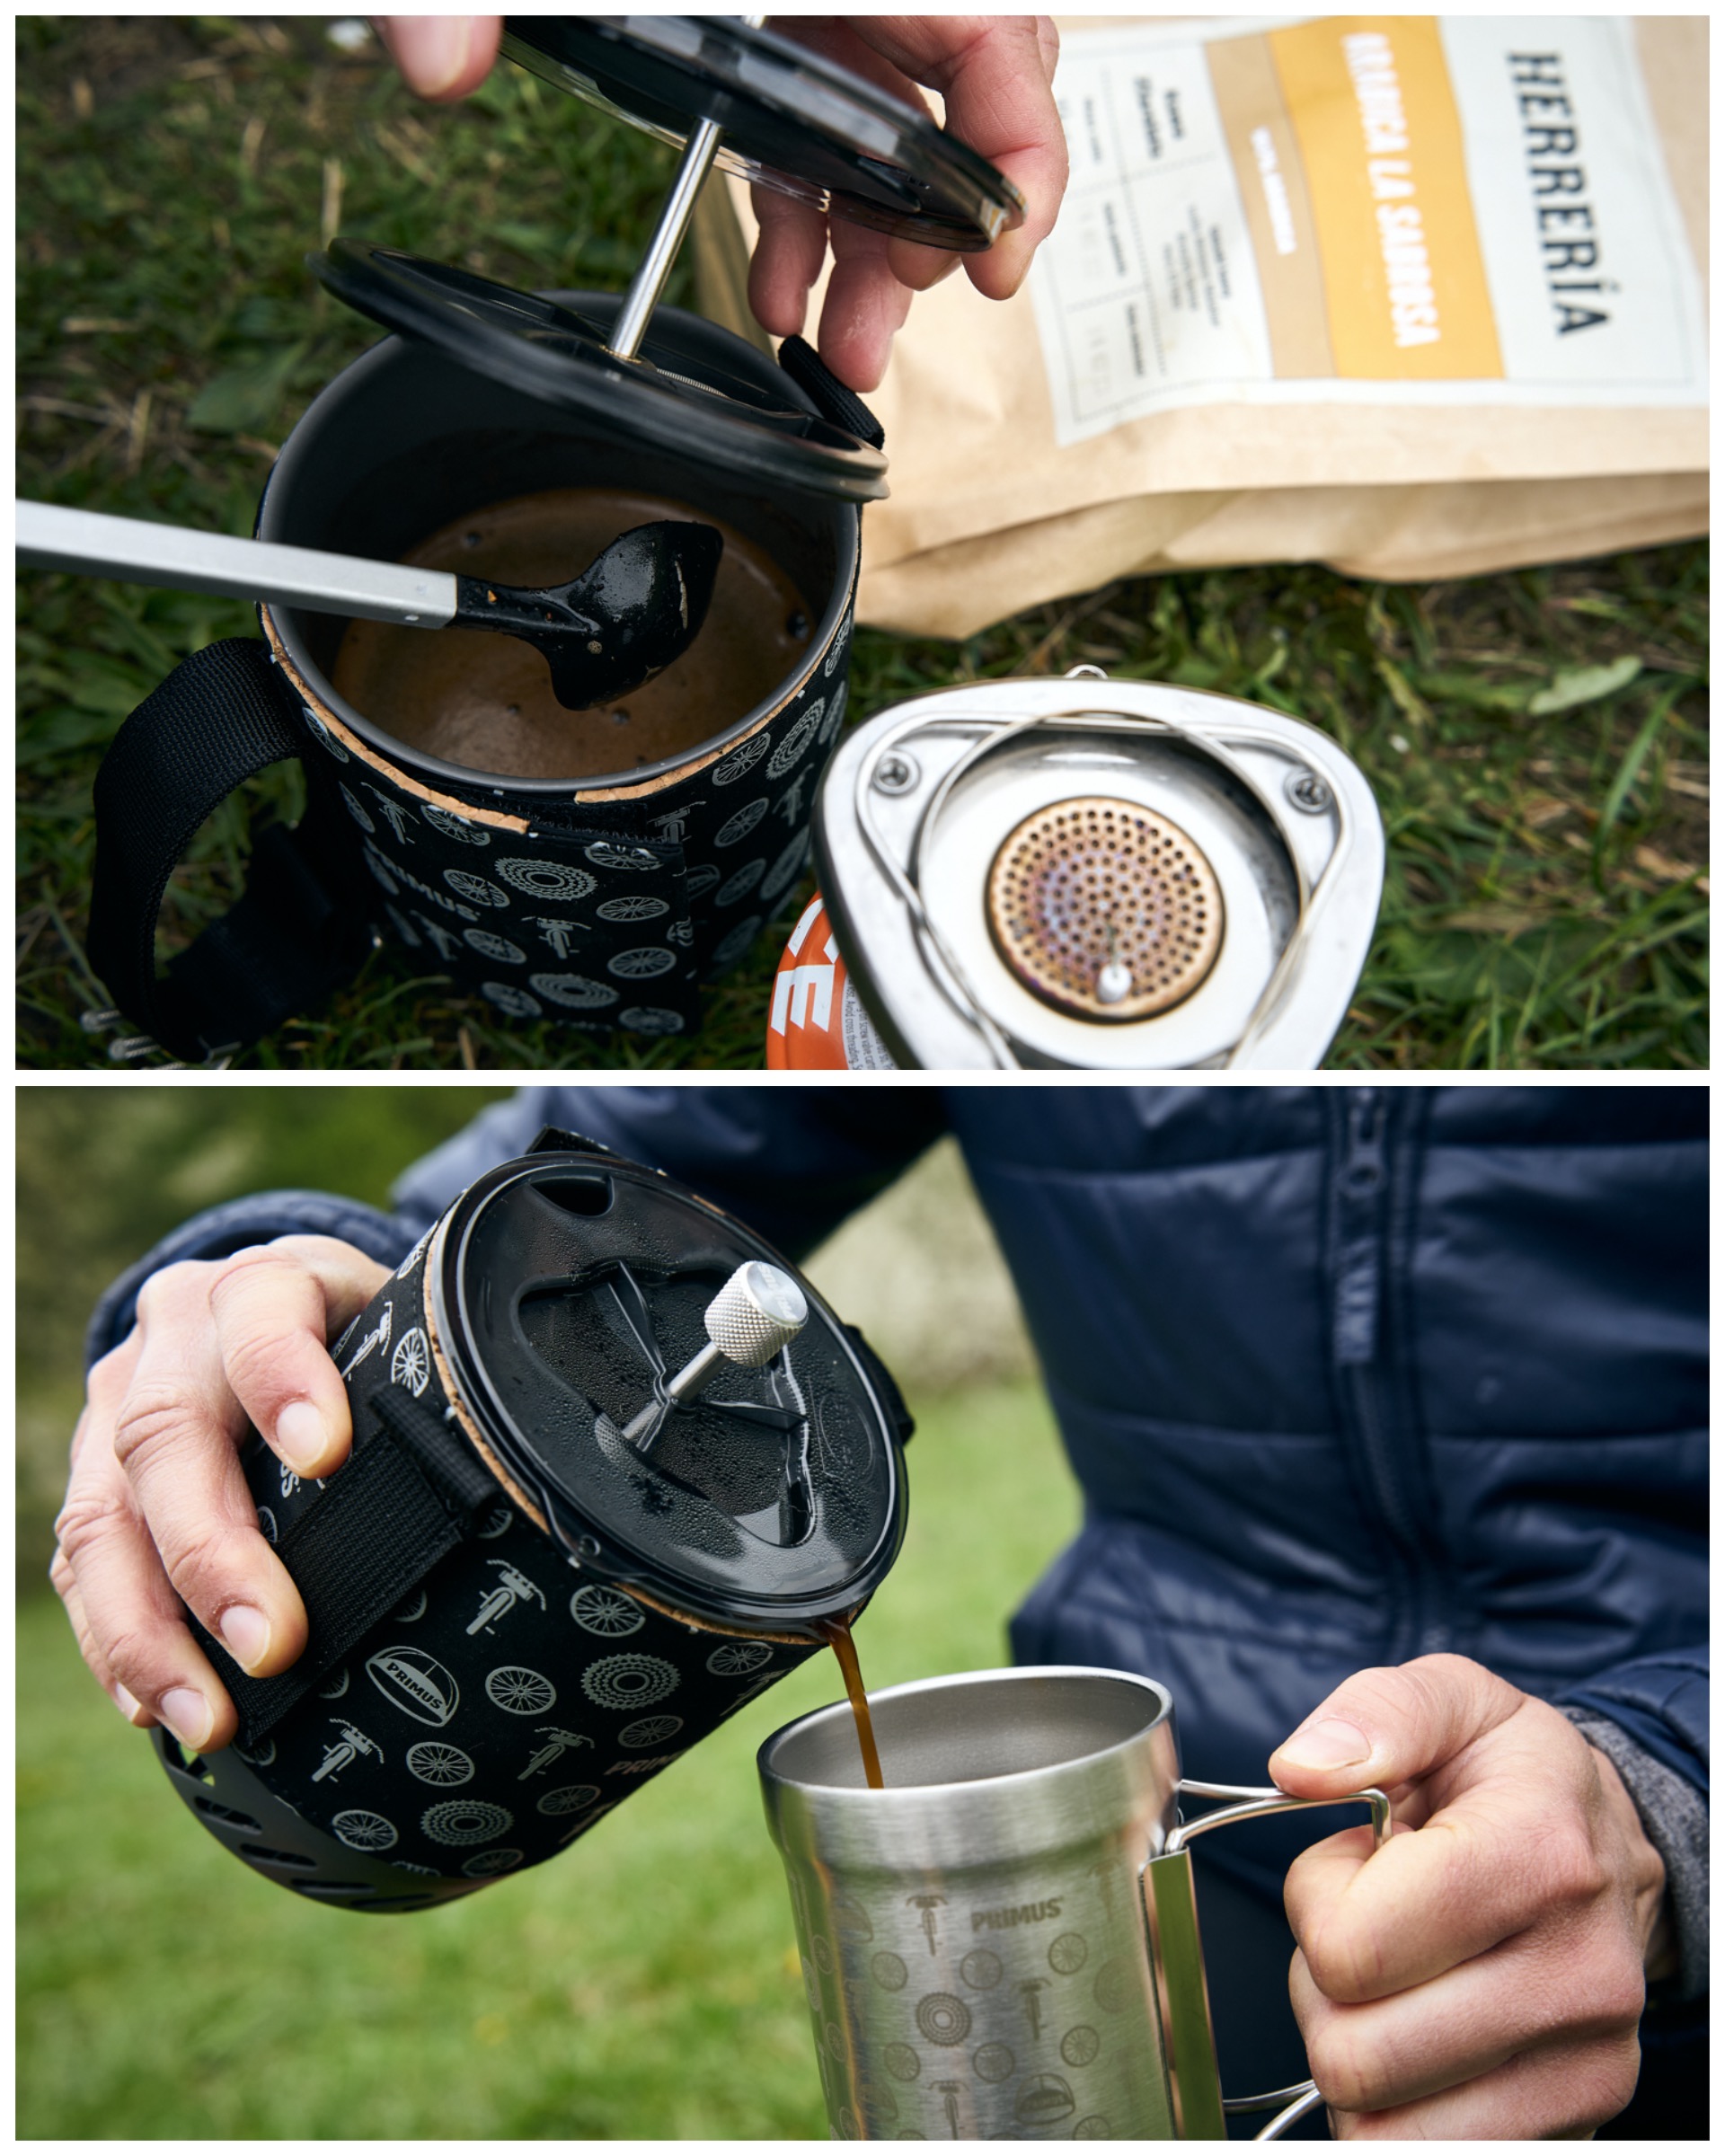 Test zestawu do gotowania i parzenia kawy Feed Zone marki Primus (fot. MG / outdoormagazyn.pl)